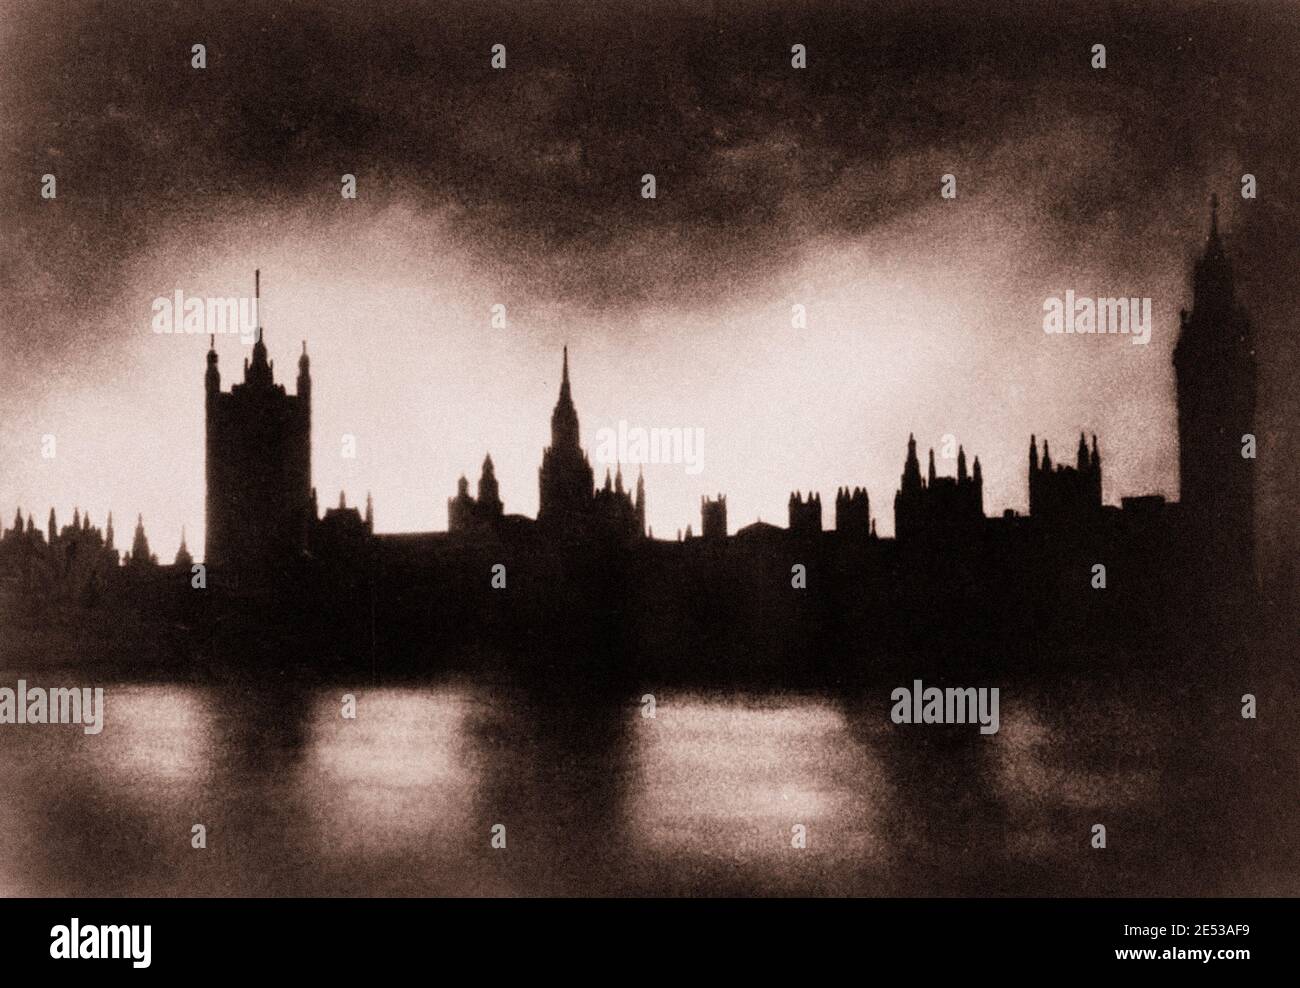 Der Palast von Westminster in London, silhouetted gegen das Licht von Bränden, die durch Bombenanschläge verursacht werden. Stockfoto